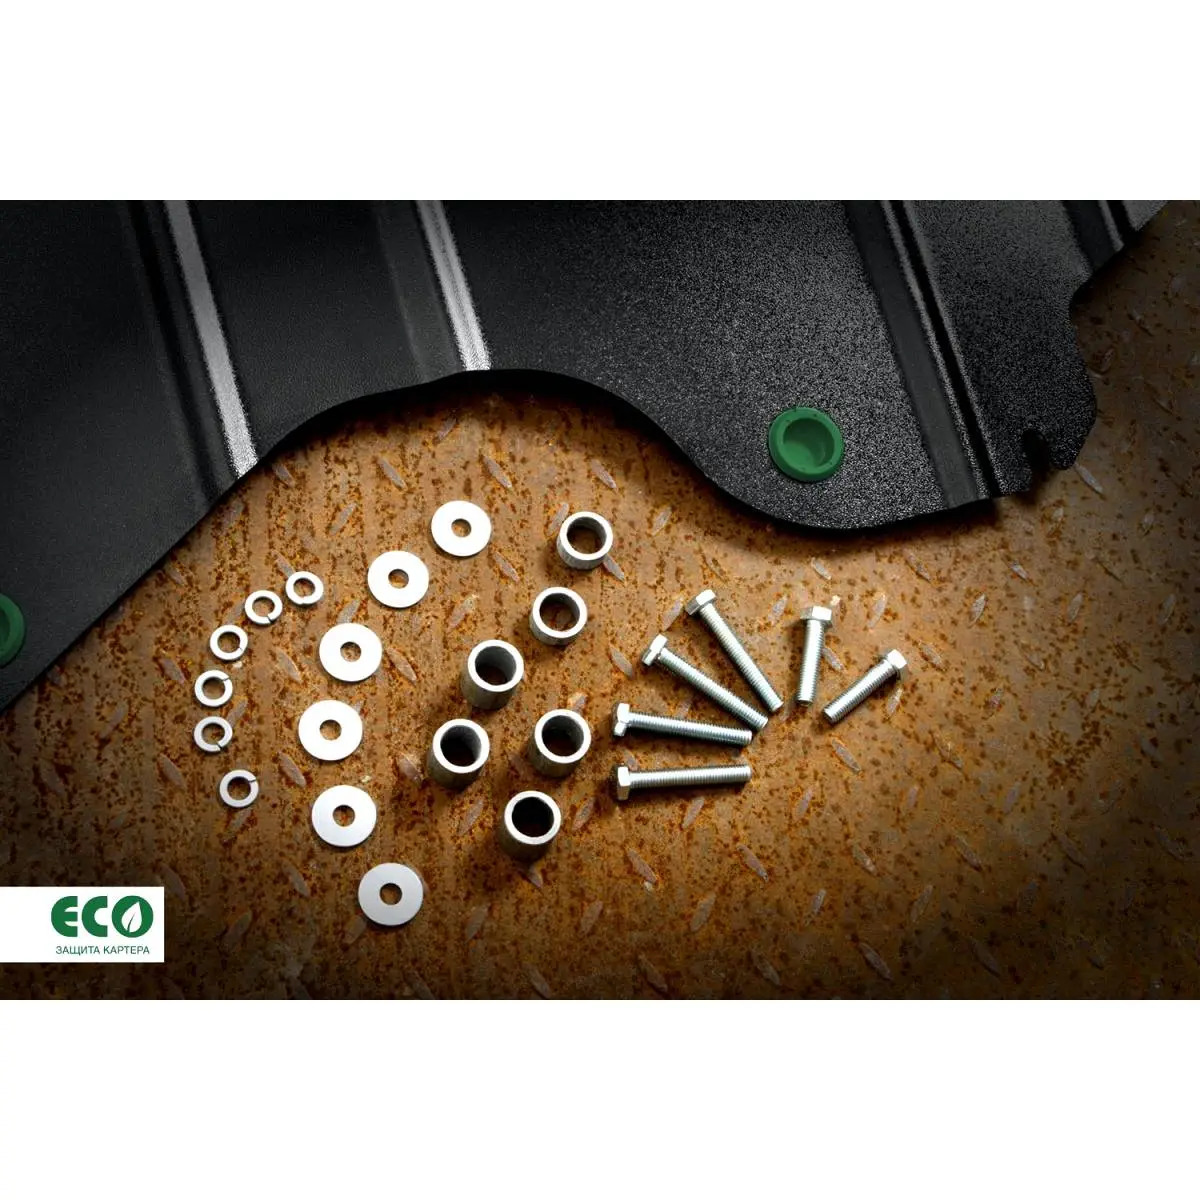 Комплект защиты радиатора и крепежа Eco NO9 HCU 1437099146 6Z4X0V eco9903320 изображение 6